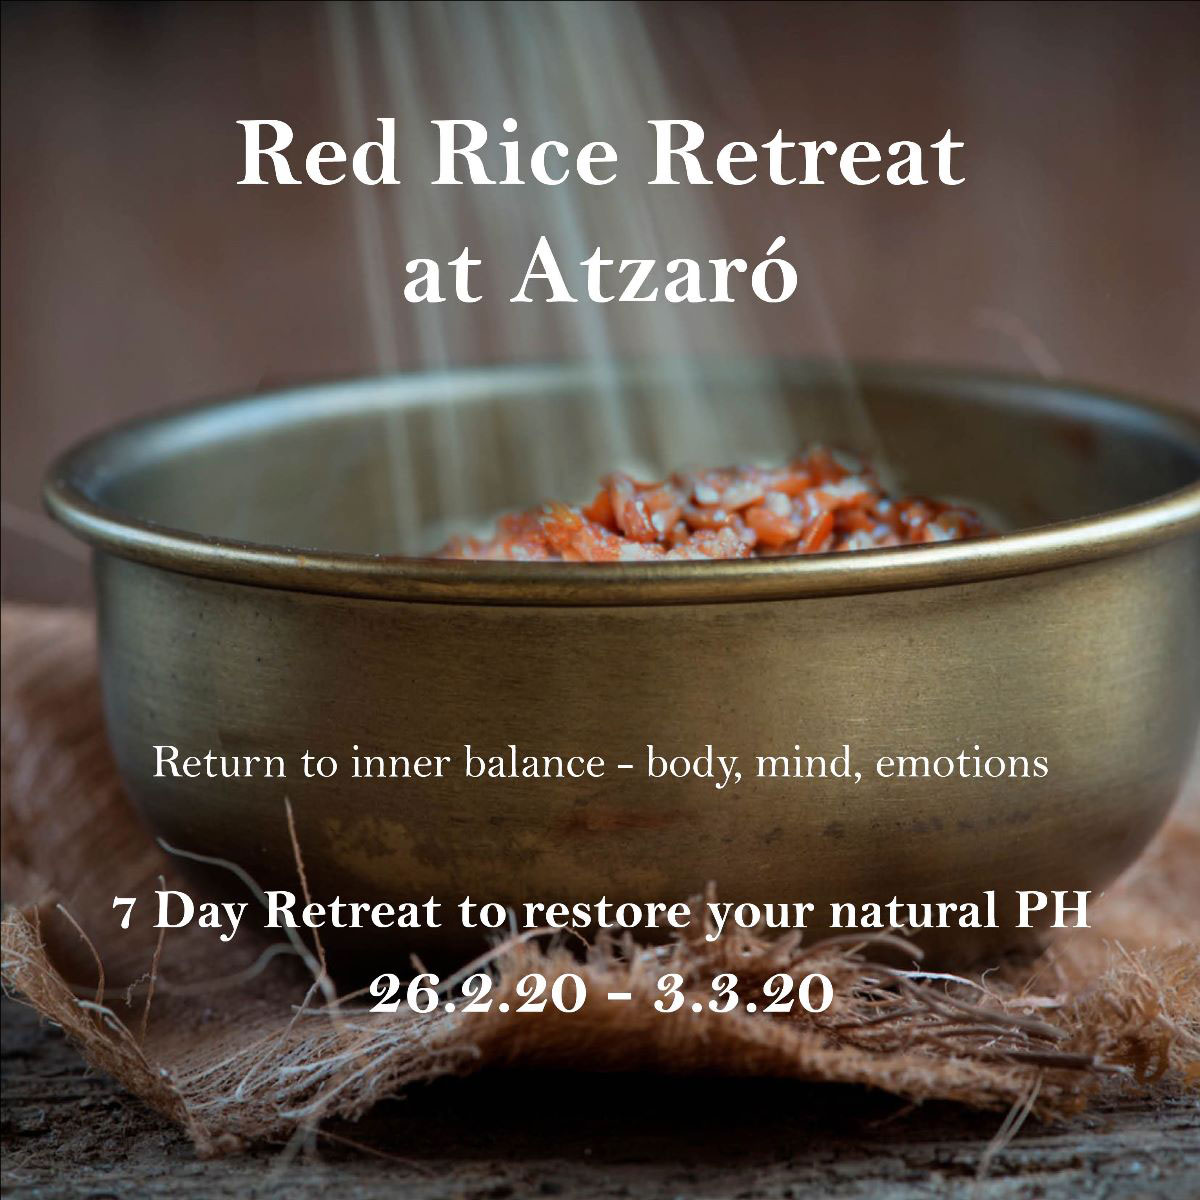 Erneuern Sie sich mit diesem Roter Reis Retreat in Atzaró Ibiza